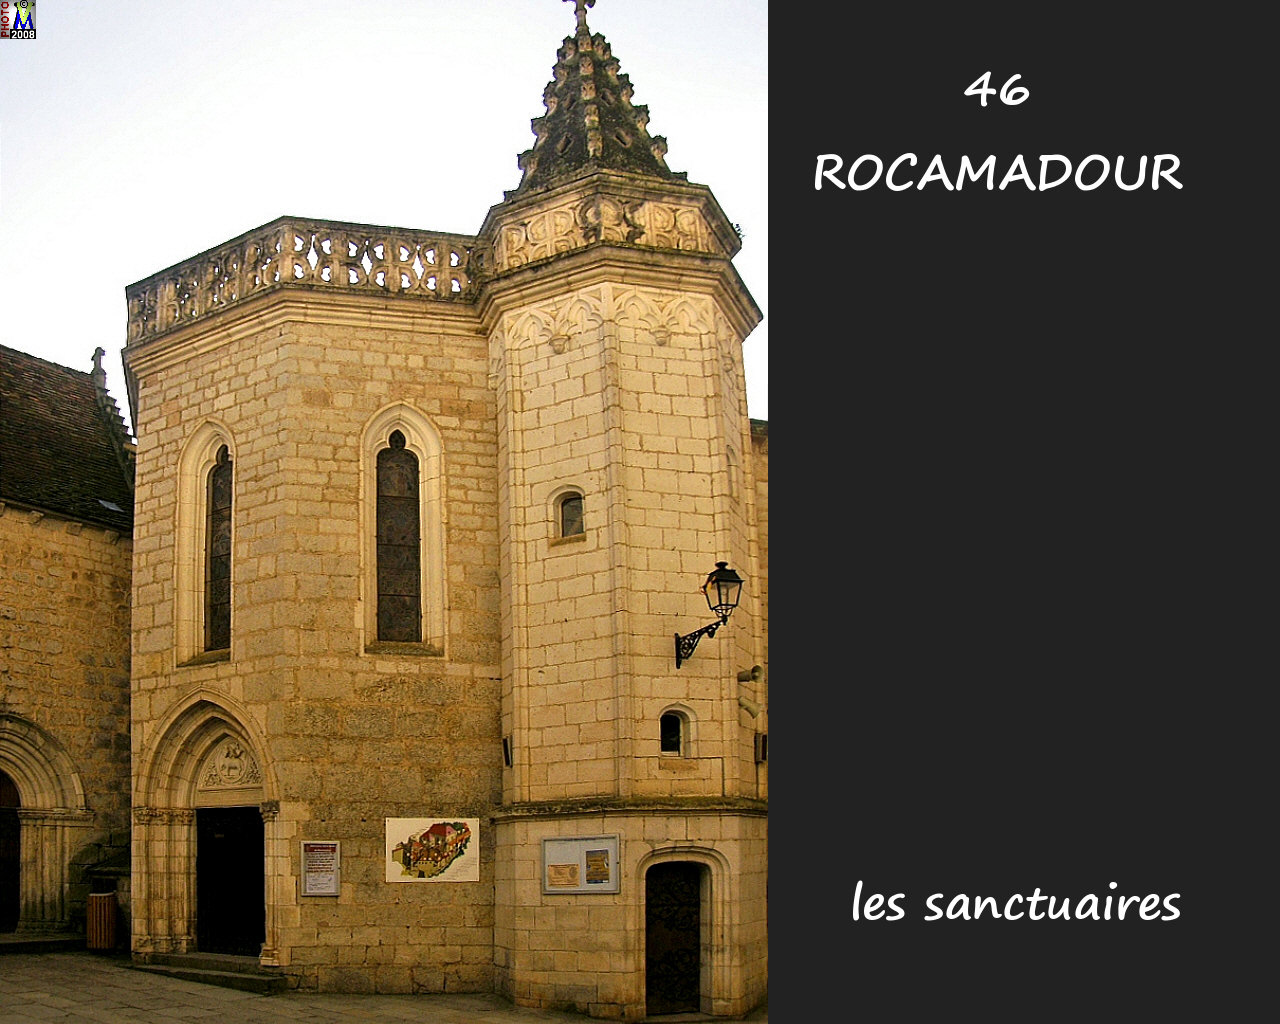 46ROCAMADOUR_sanctuaires_206.jpg